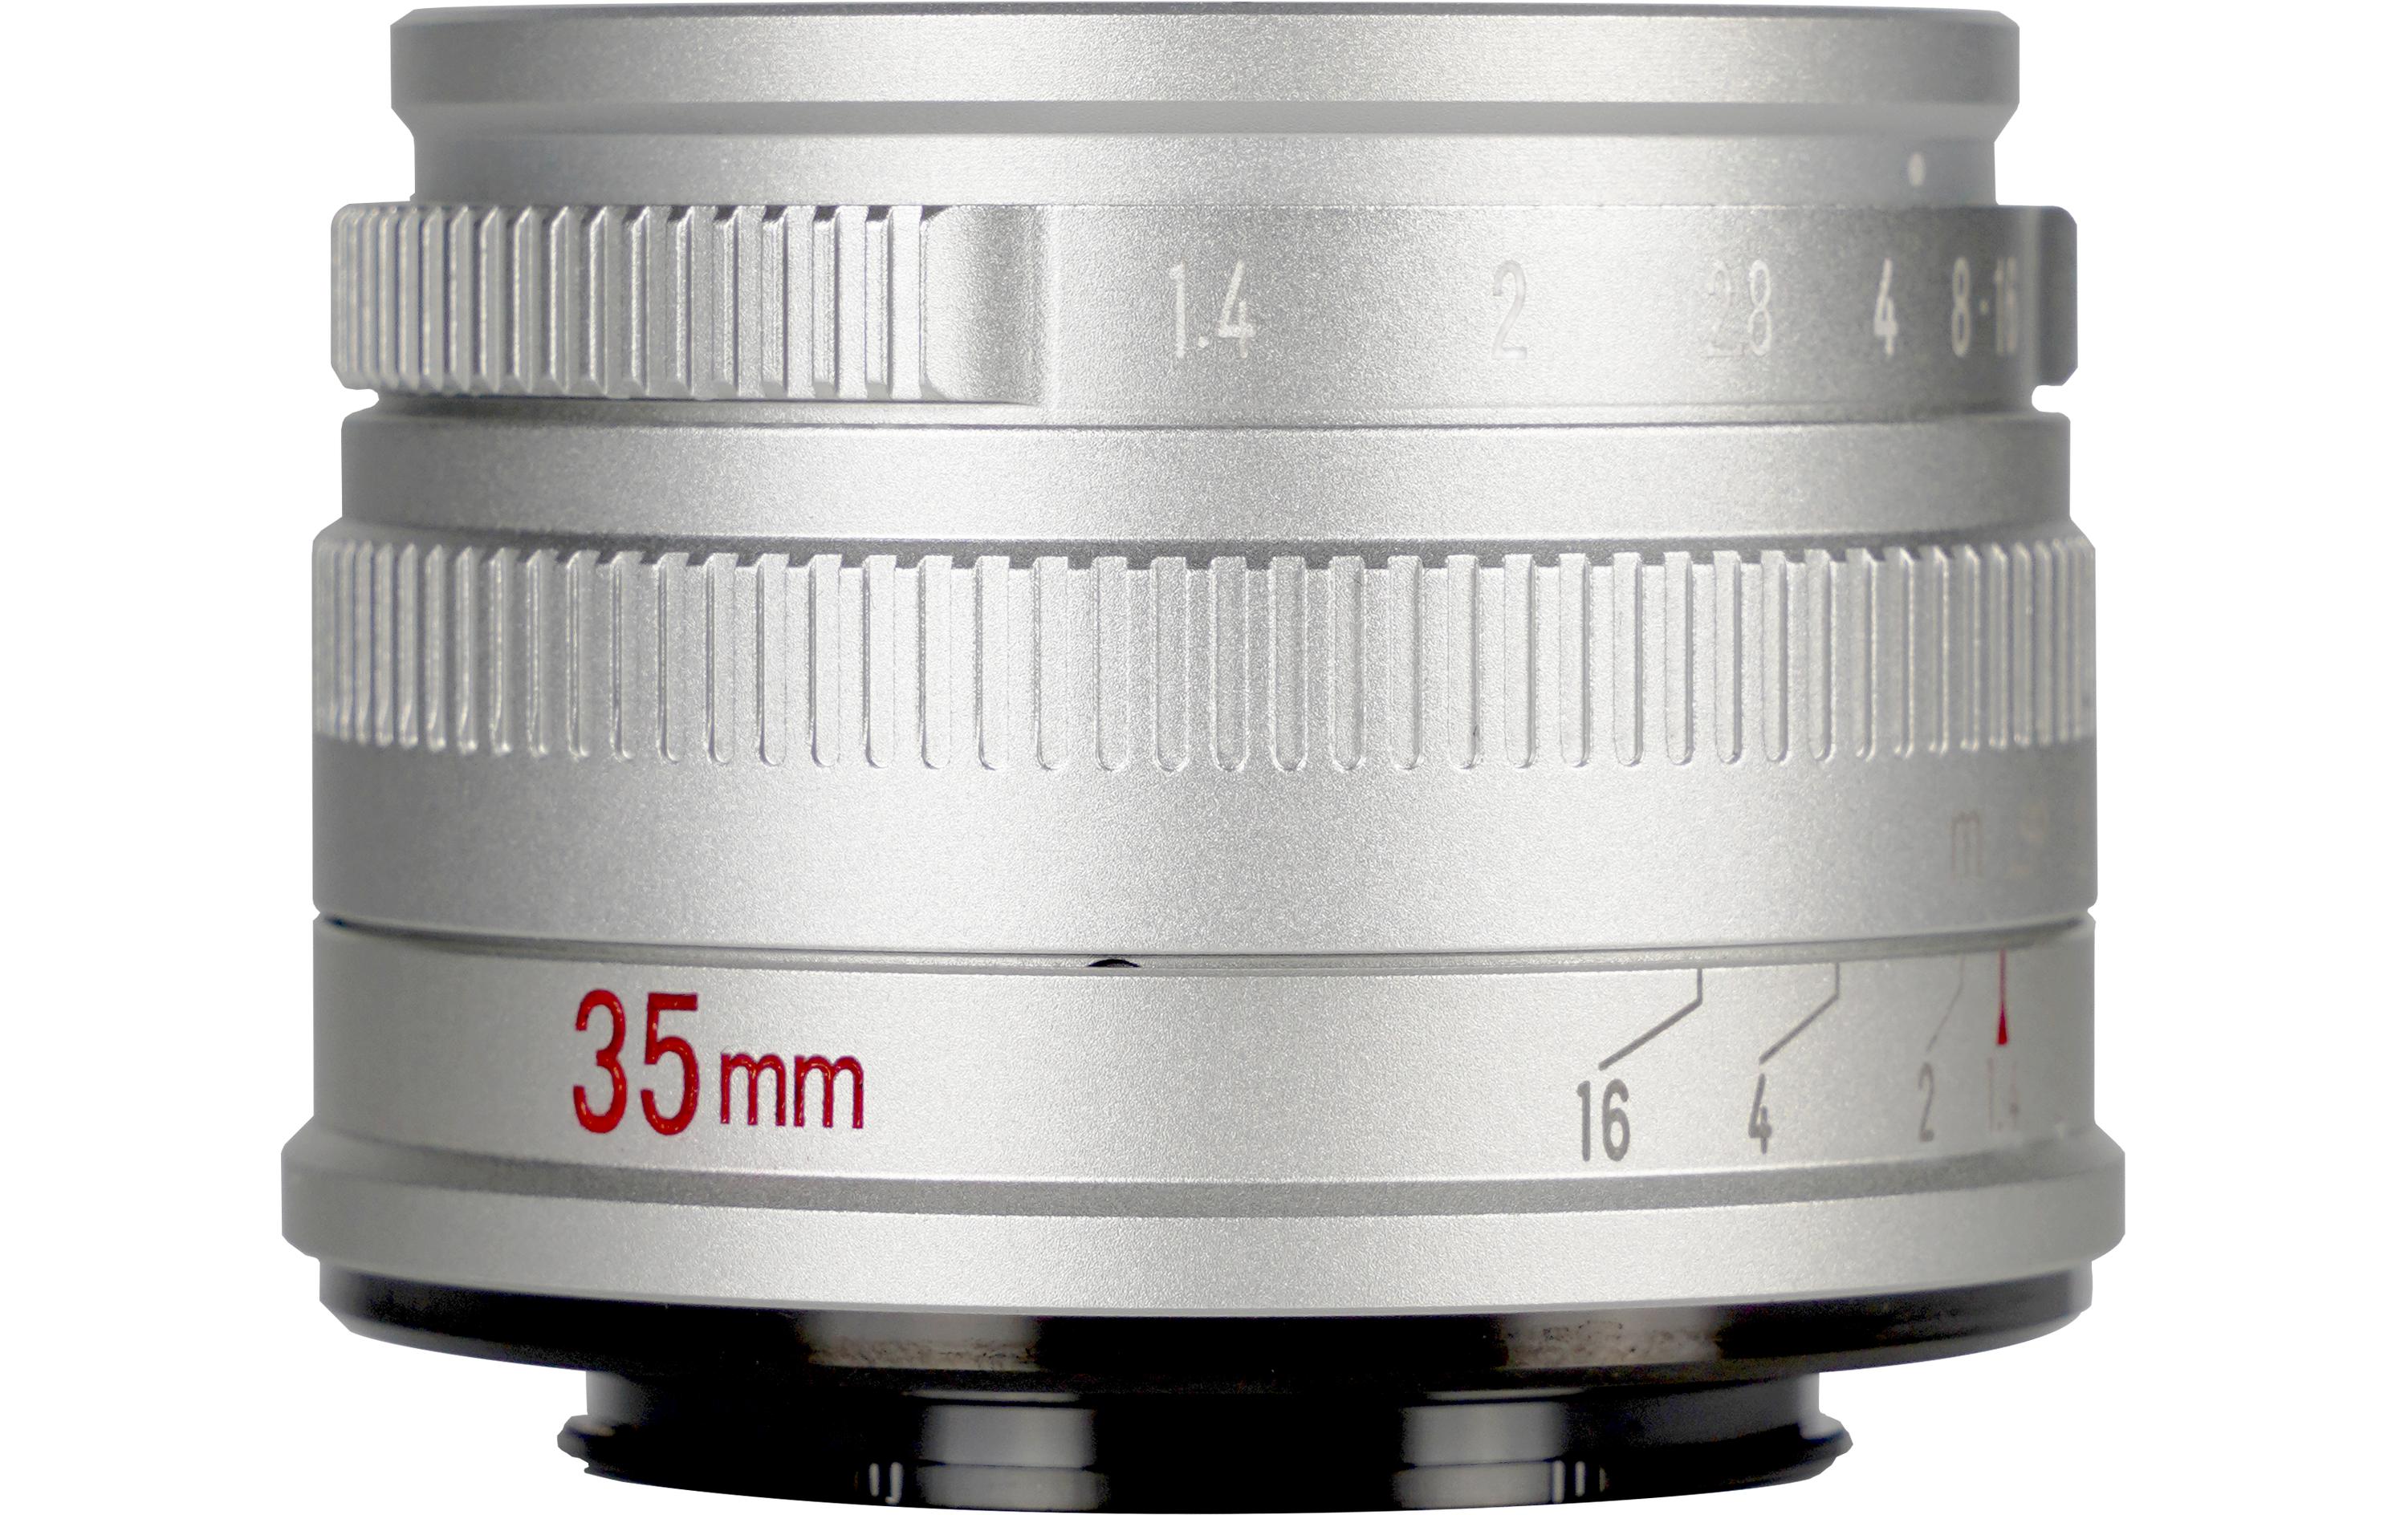 7Artisans Festbrennweite 35mm F/1.4 – Canon EF-M